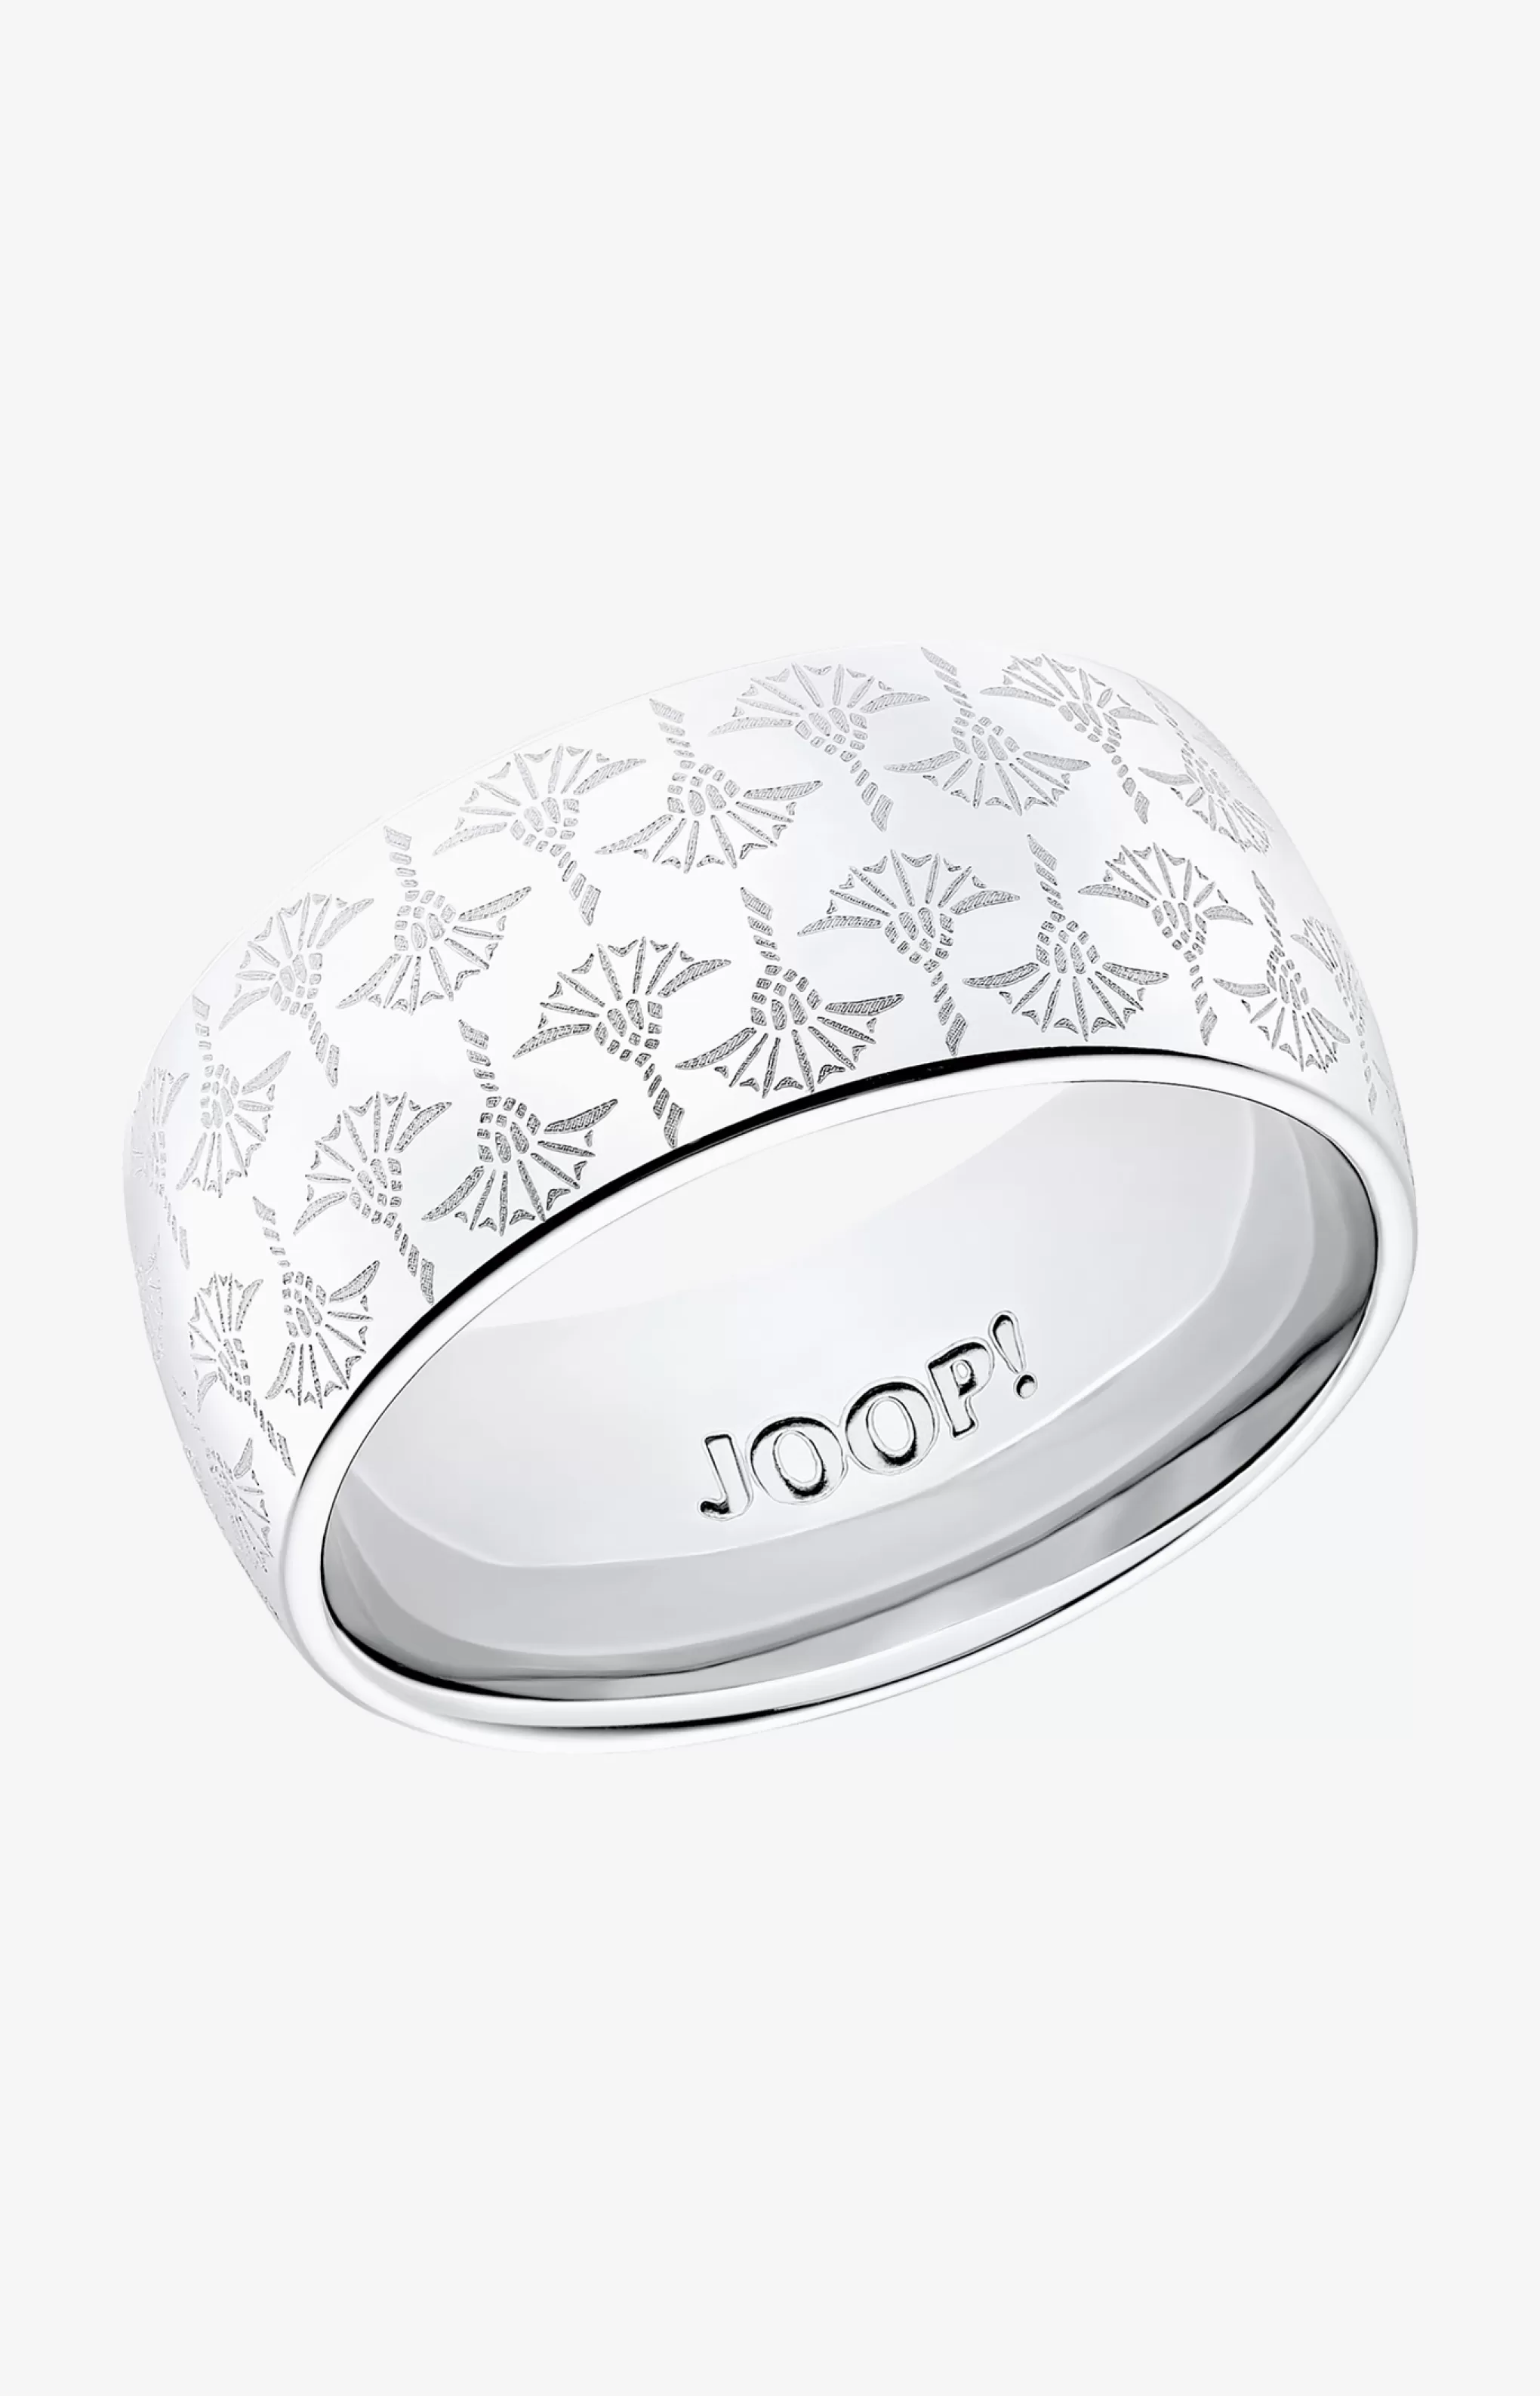 Rings | Jewellery*JOOP Rings | Jewellery Statement ring in